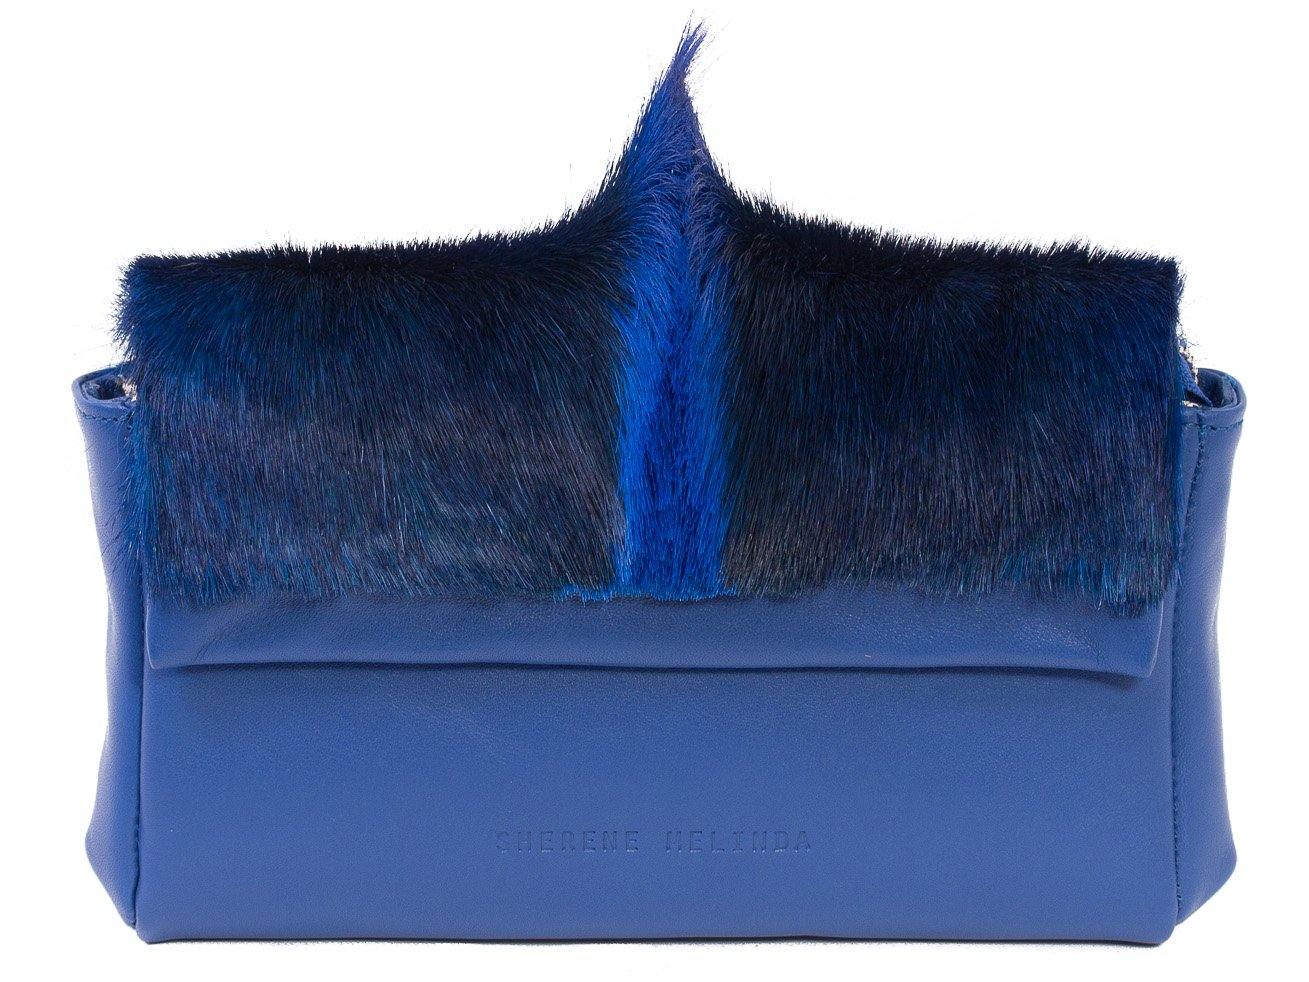 sherene melinda springbok hair-on-hide royal blue leather Sophy SS18 Clutch Bag Fan front